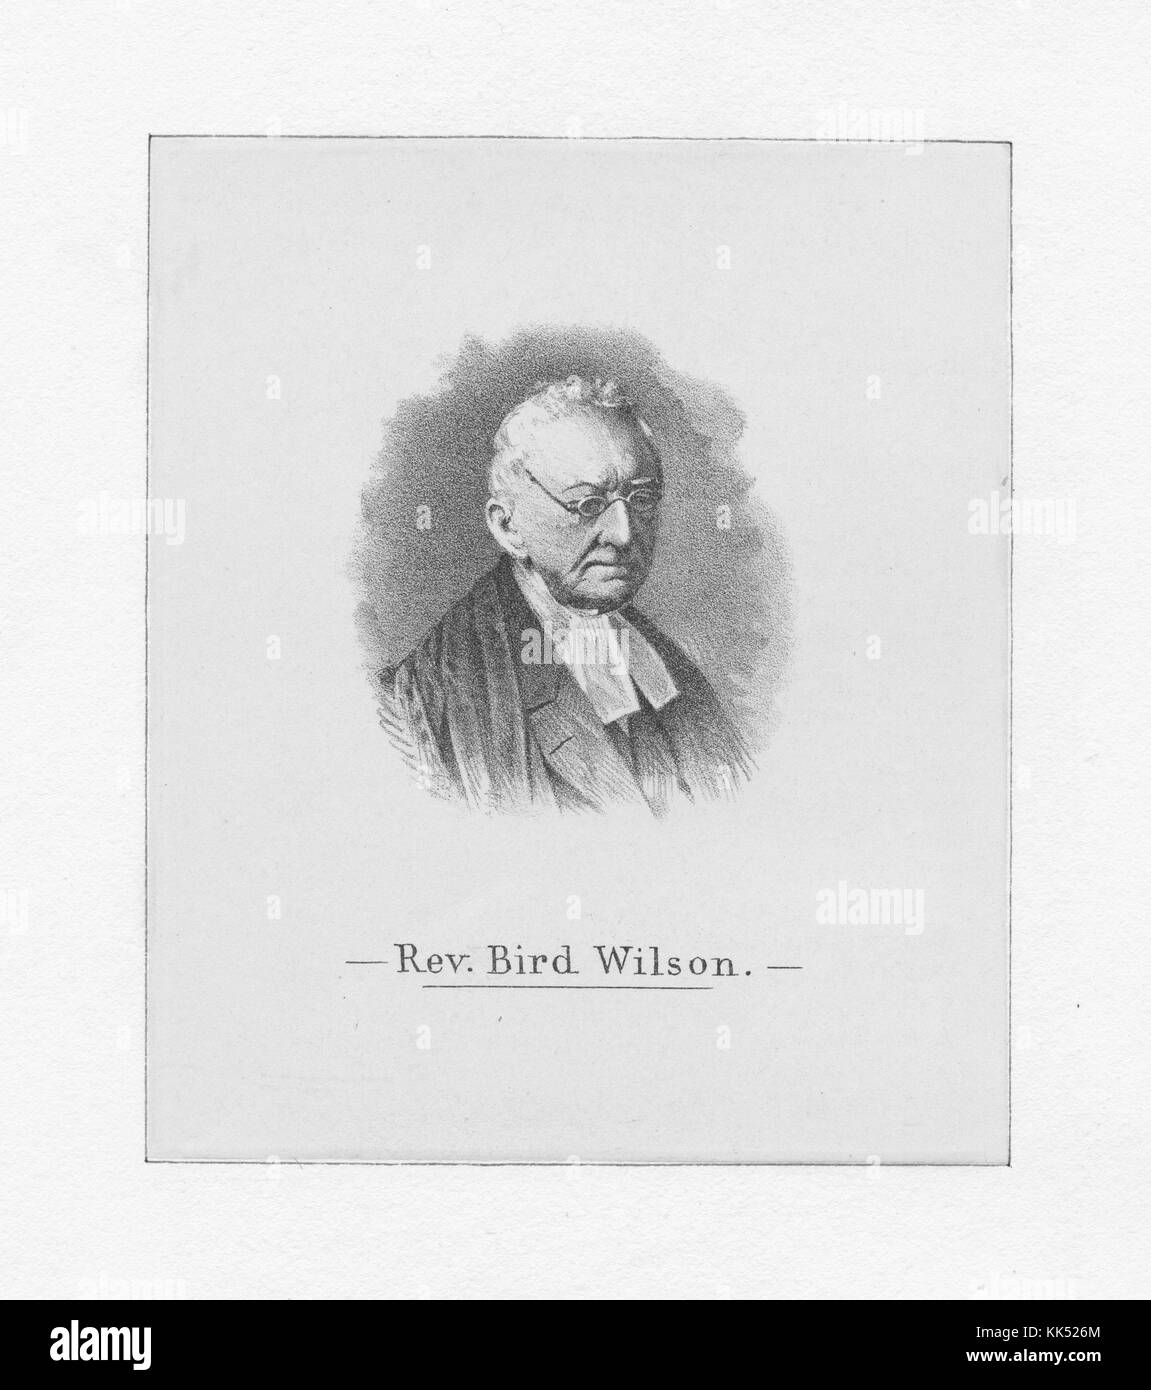 Un'incisione tratta da un ritratto del reverendo Bird Wilson, è principalmente noto per le sue opere storiche che fanno luce sulle pratiche religiose di alcuni dei Padri fondatori degli Stati Uniti, era il padre di James Wilson, padre fondatore degli Stati Uniti e firmatario della dichiarazione d'indipendenza degli Stati Uniti d'America del 1885. Dalla New York Public Library. Foto Stock